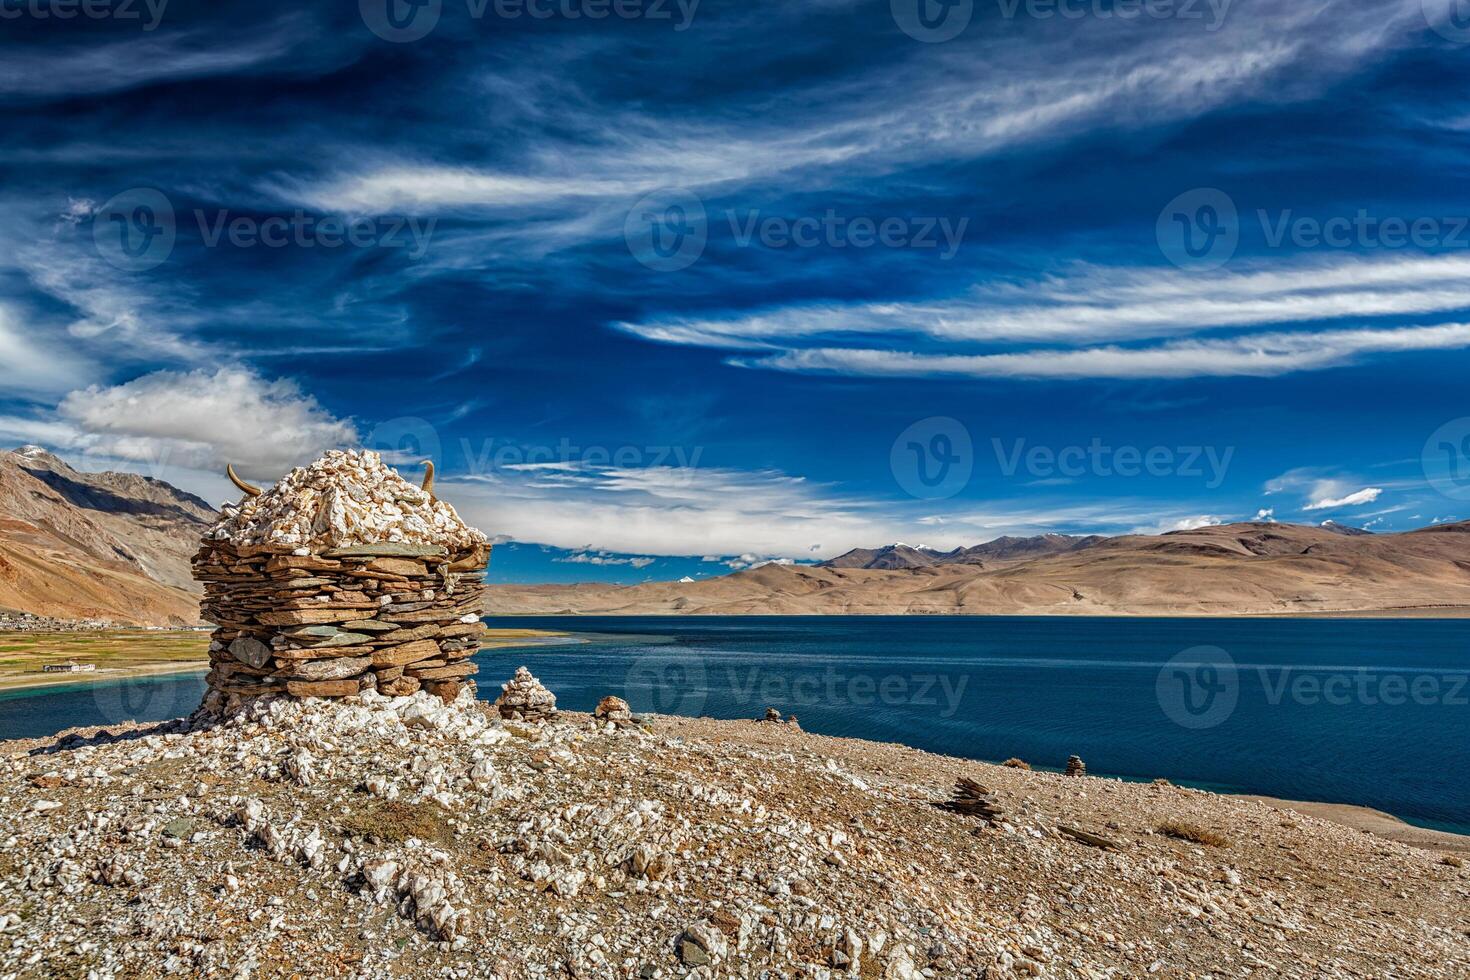 Stone cairn at Himalayan lake Tso Moriri, photo